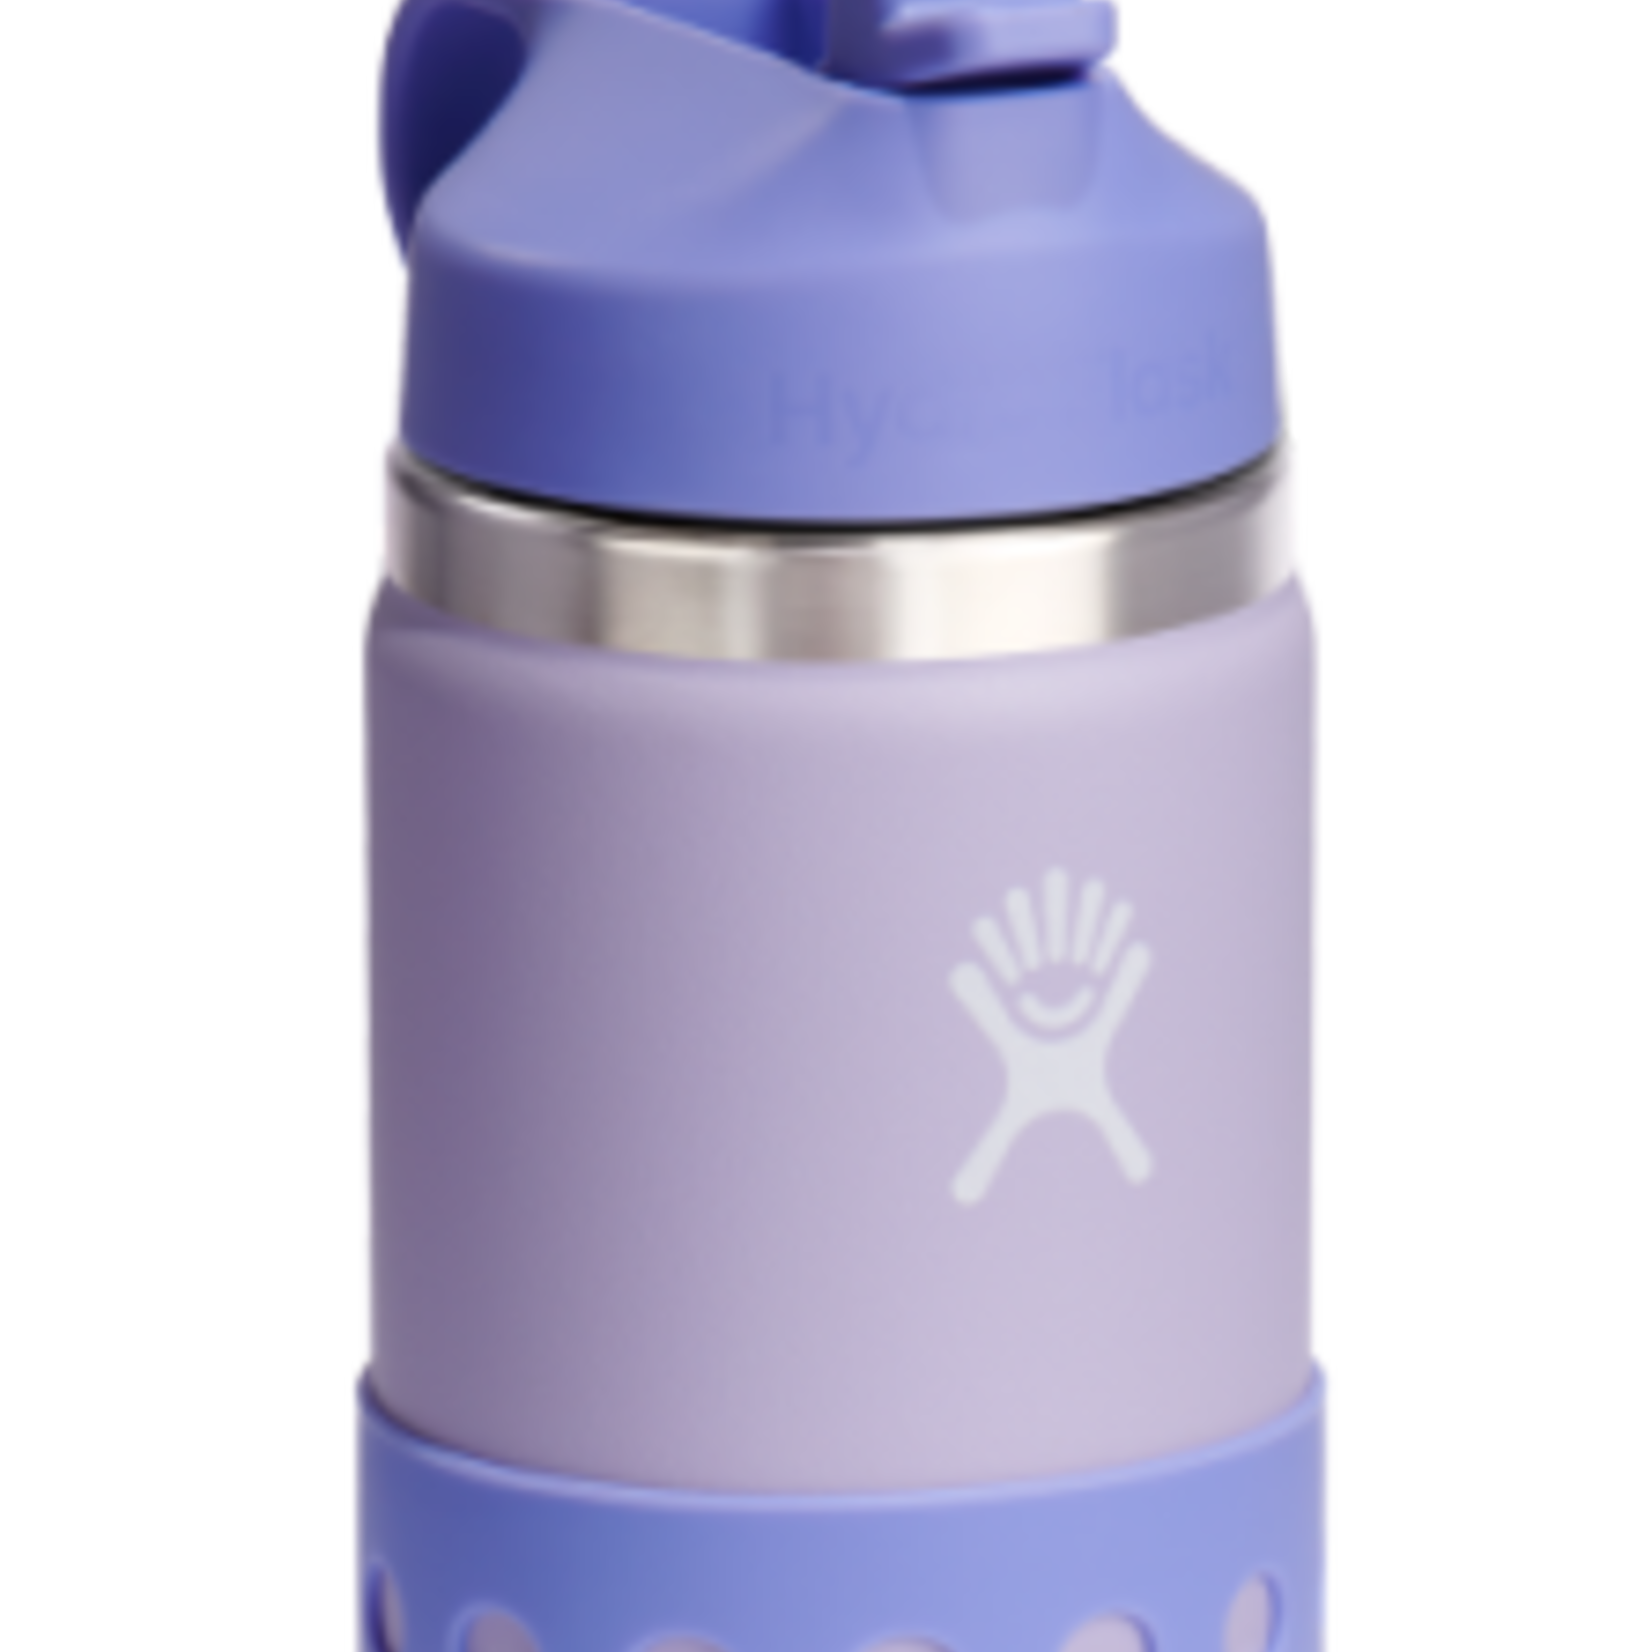 Hydro Flask - Kids Water Bottle 354 ml (12 oz)